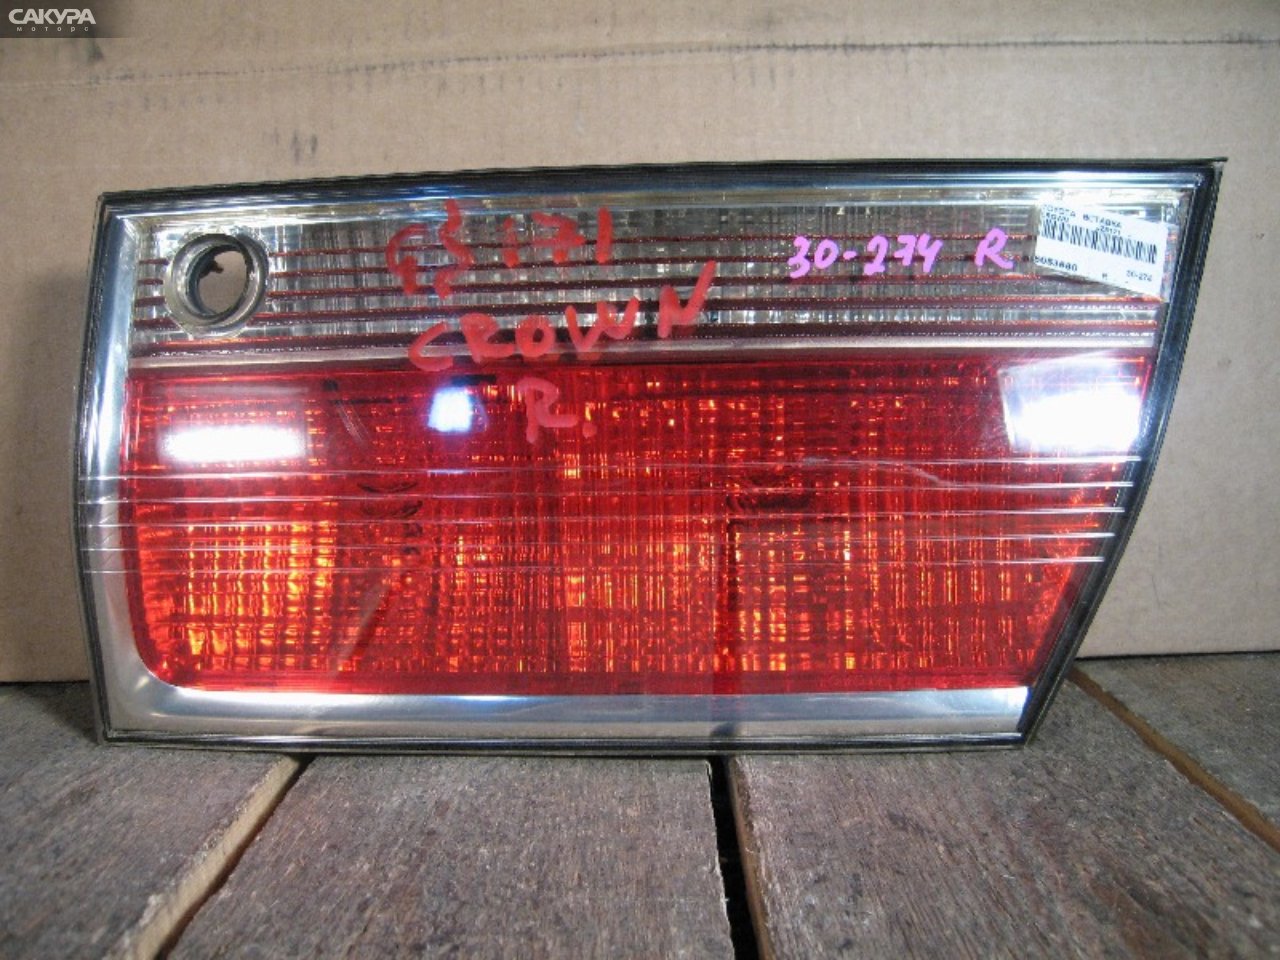 Фонарь вставка багажника правый Toyota Crown JZS171 30-274: купить в Сакура Абакан.